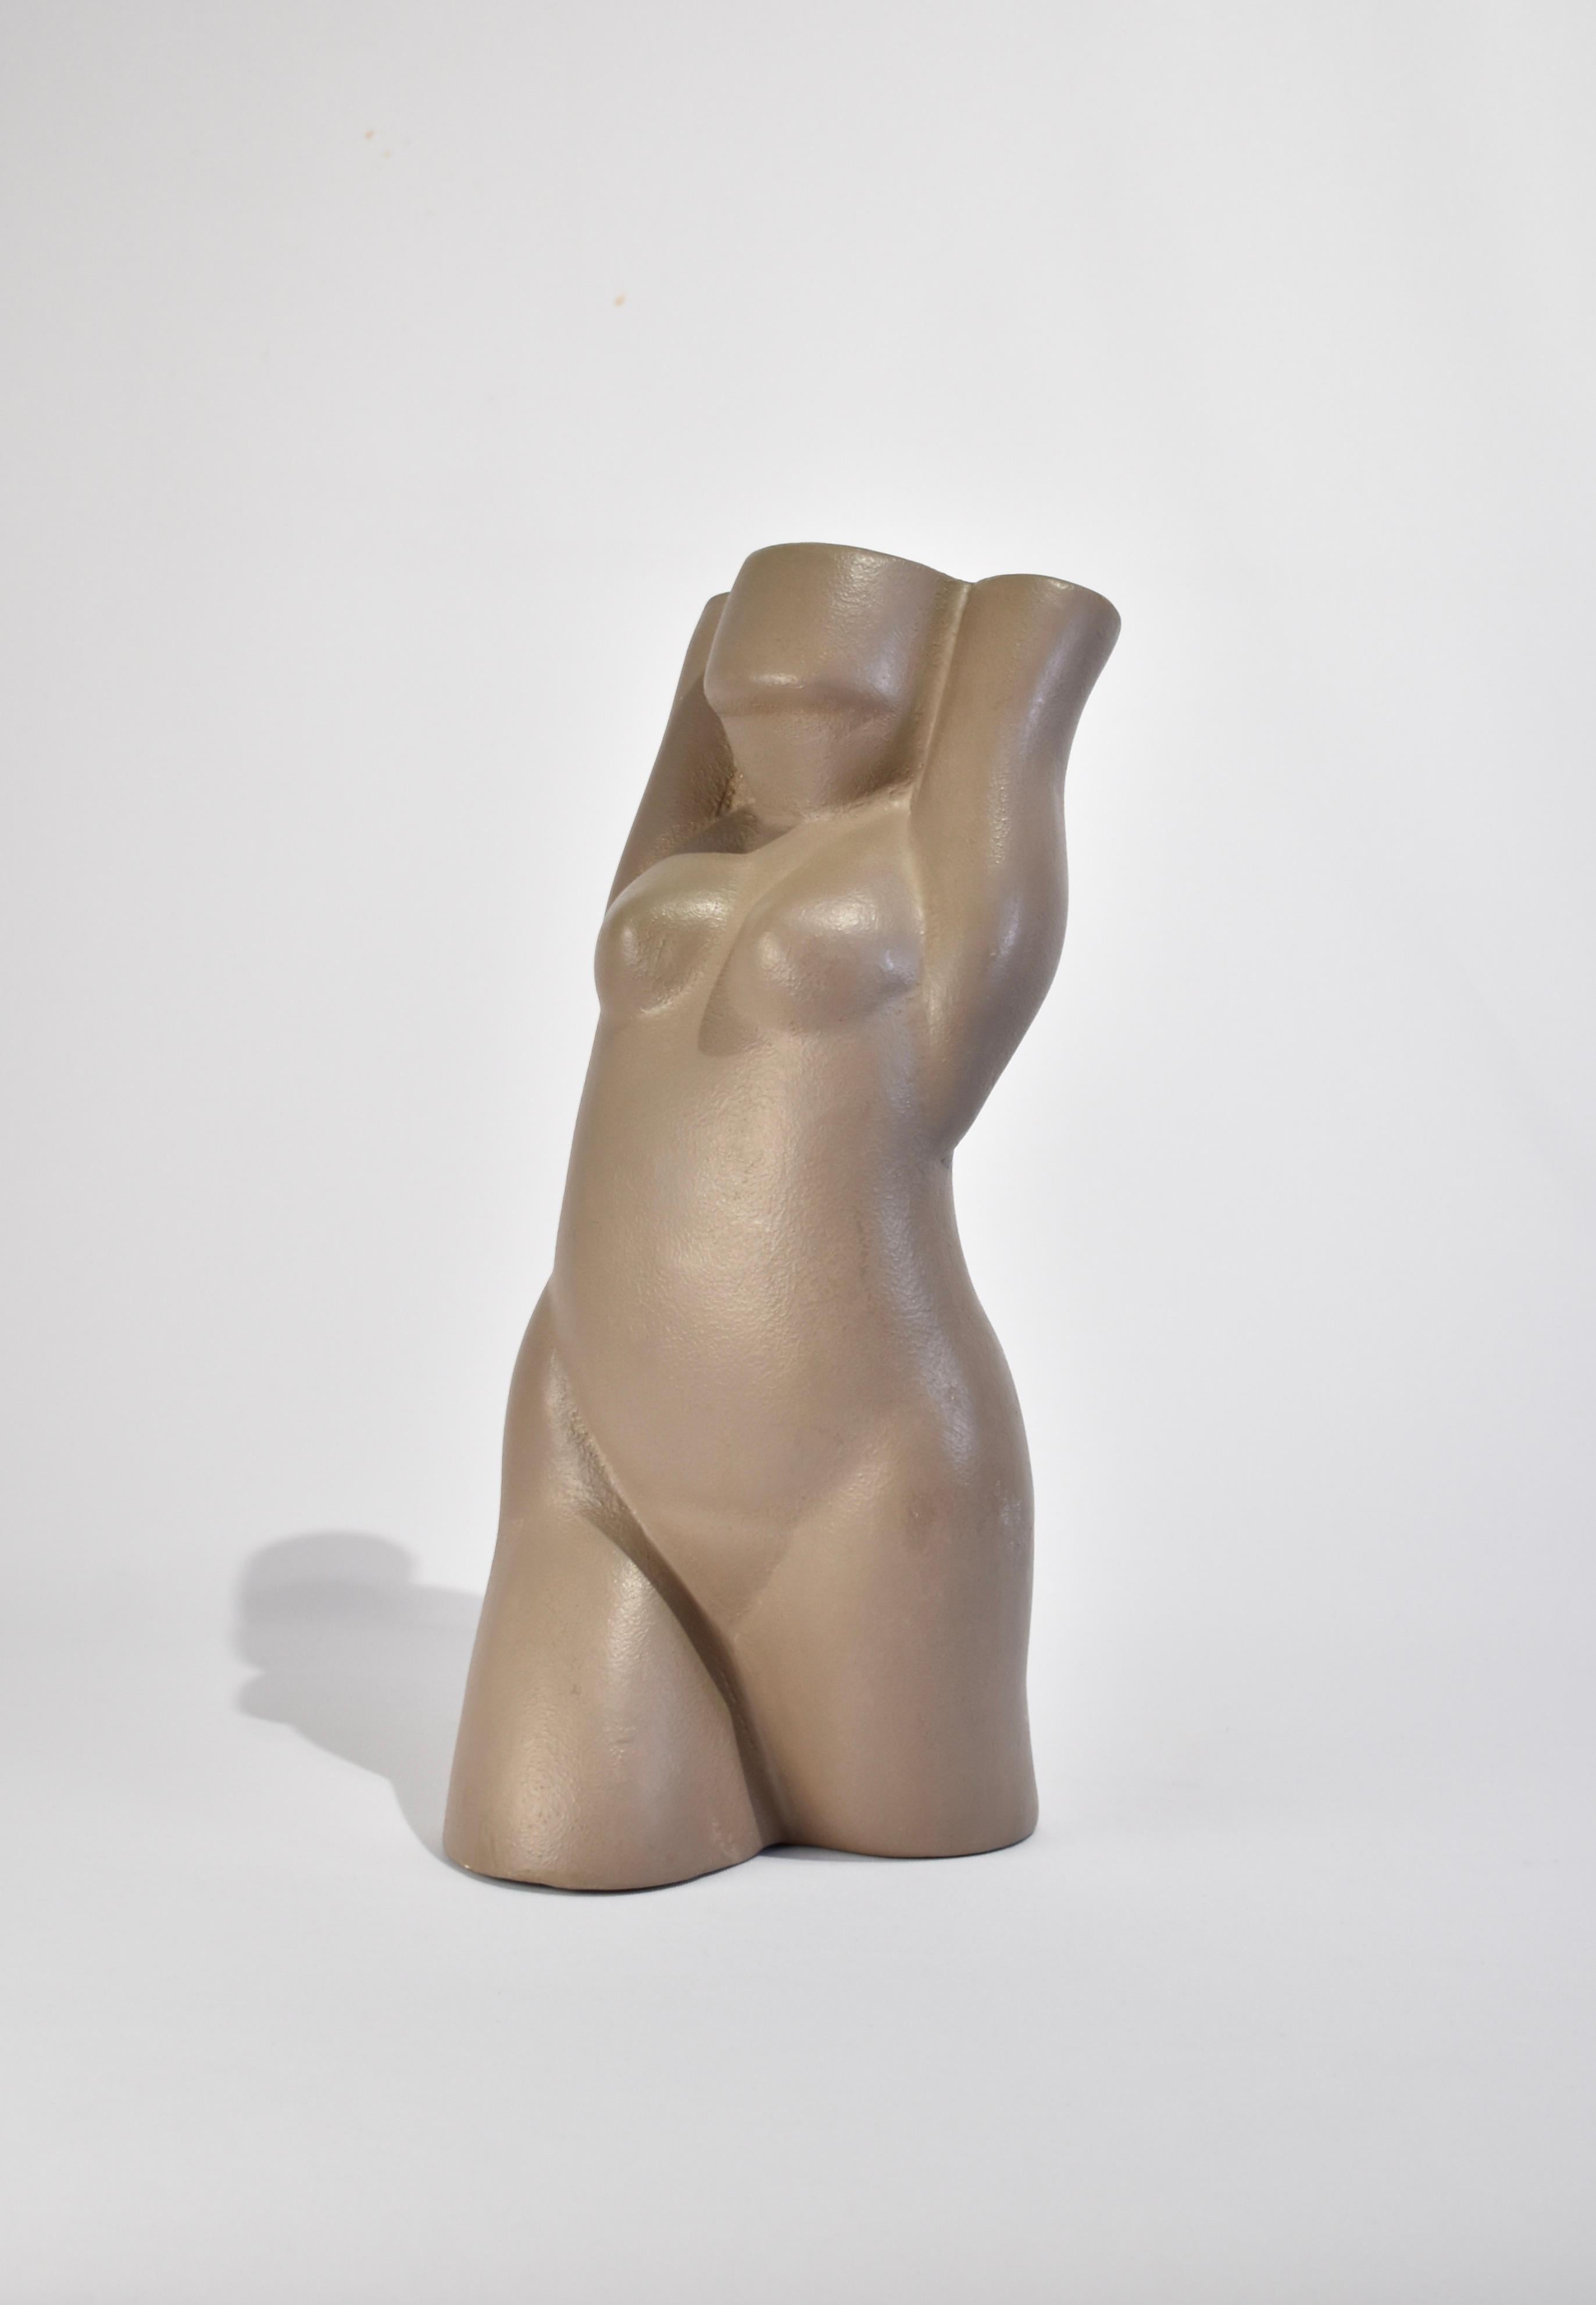 Sculpture de personnage en céramique vintage en émail gris mat, creux à l'intérieur. Attribué à Donna Polseno, non signé.